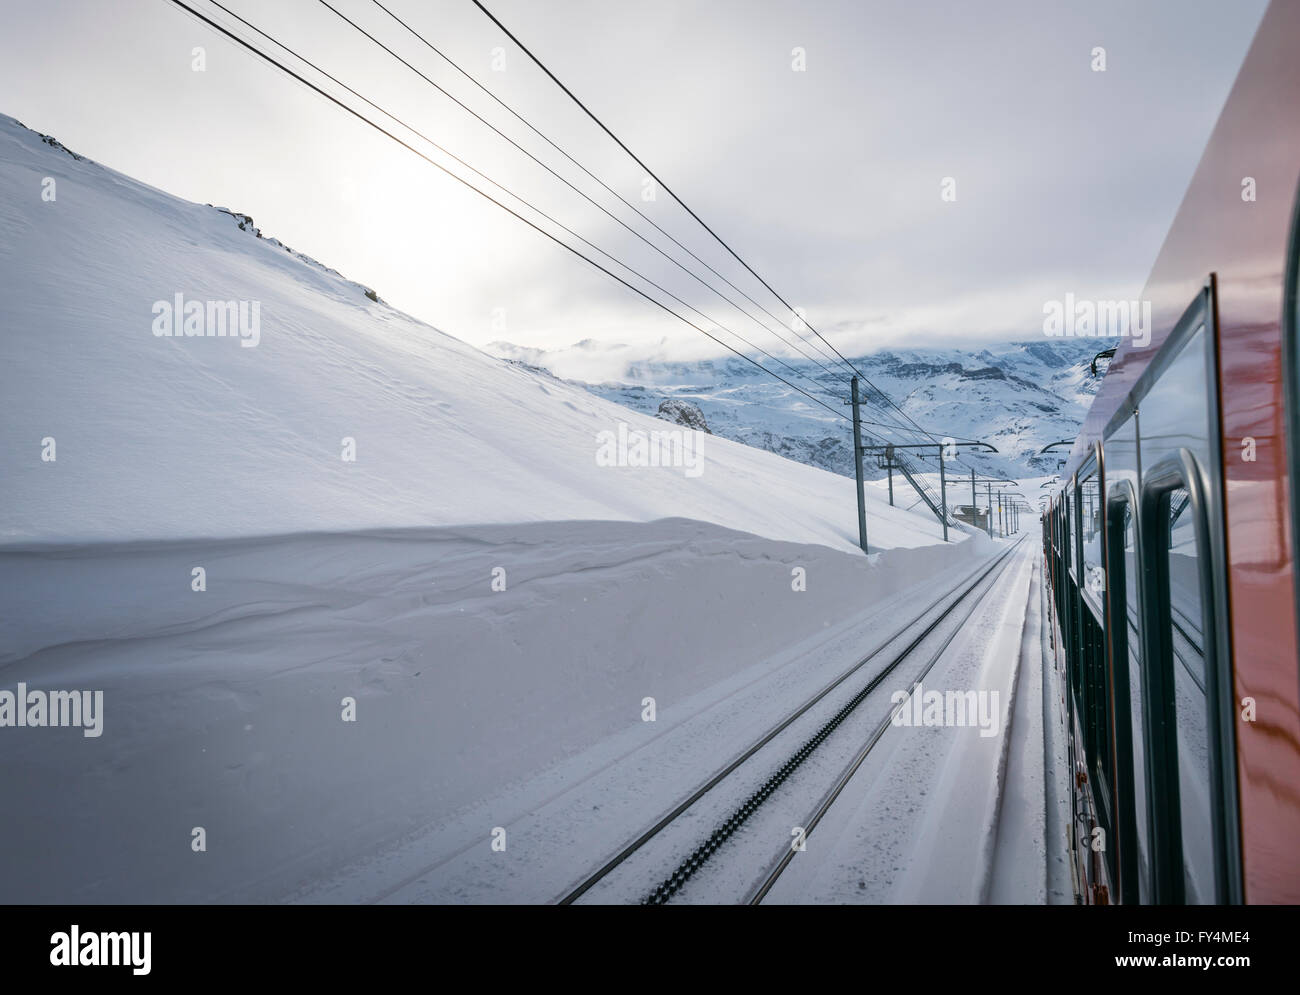 Vista desde el tren del Gornergrat Railway, que conduce desde la aldea suiza de Zermatt hasta la cima del Gornergrat. Foto de stock